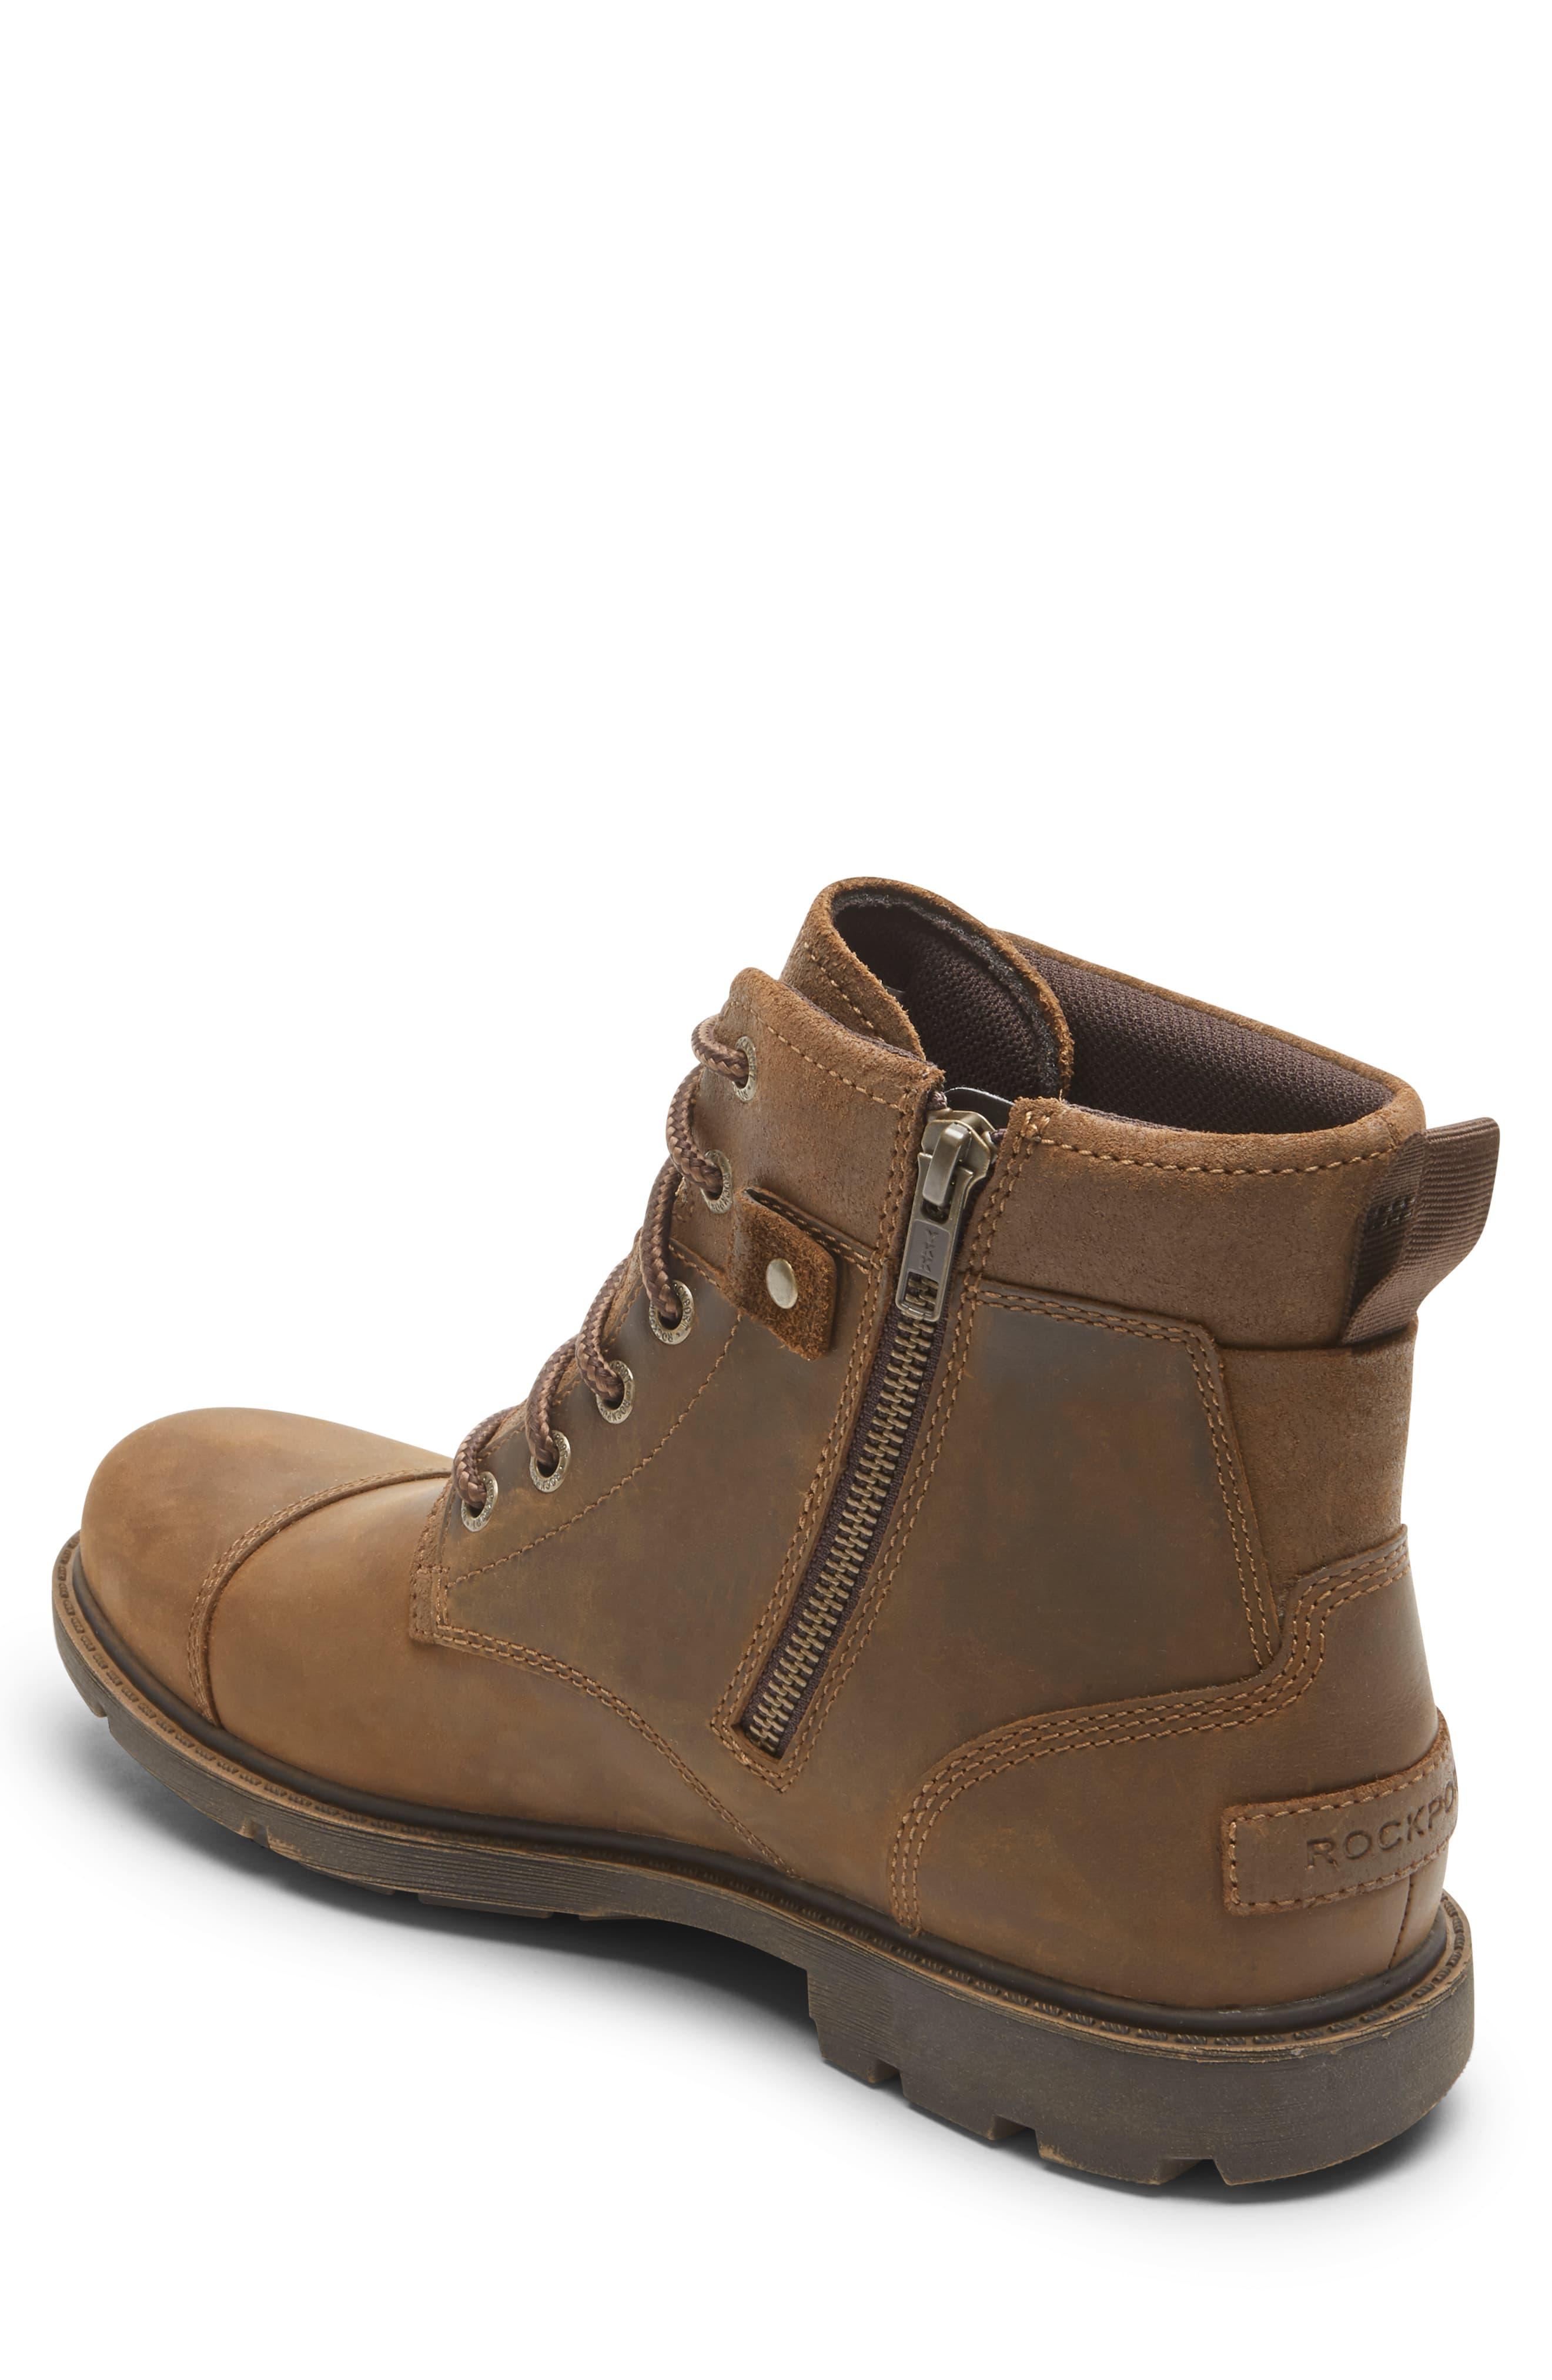 Rockport Rugged Bucks Ii Waterproof Plain Toe Boot in Brown for Men - Lyst